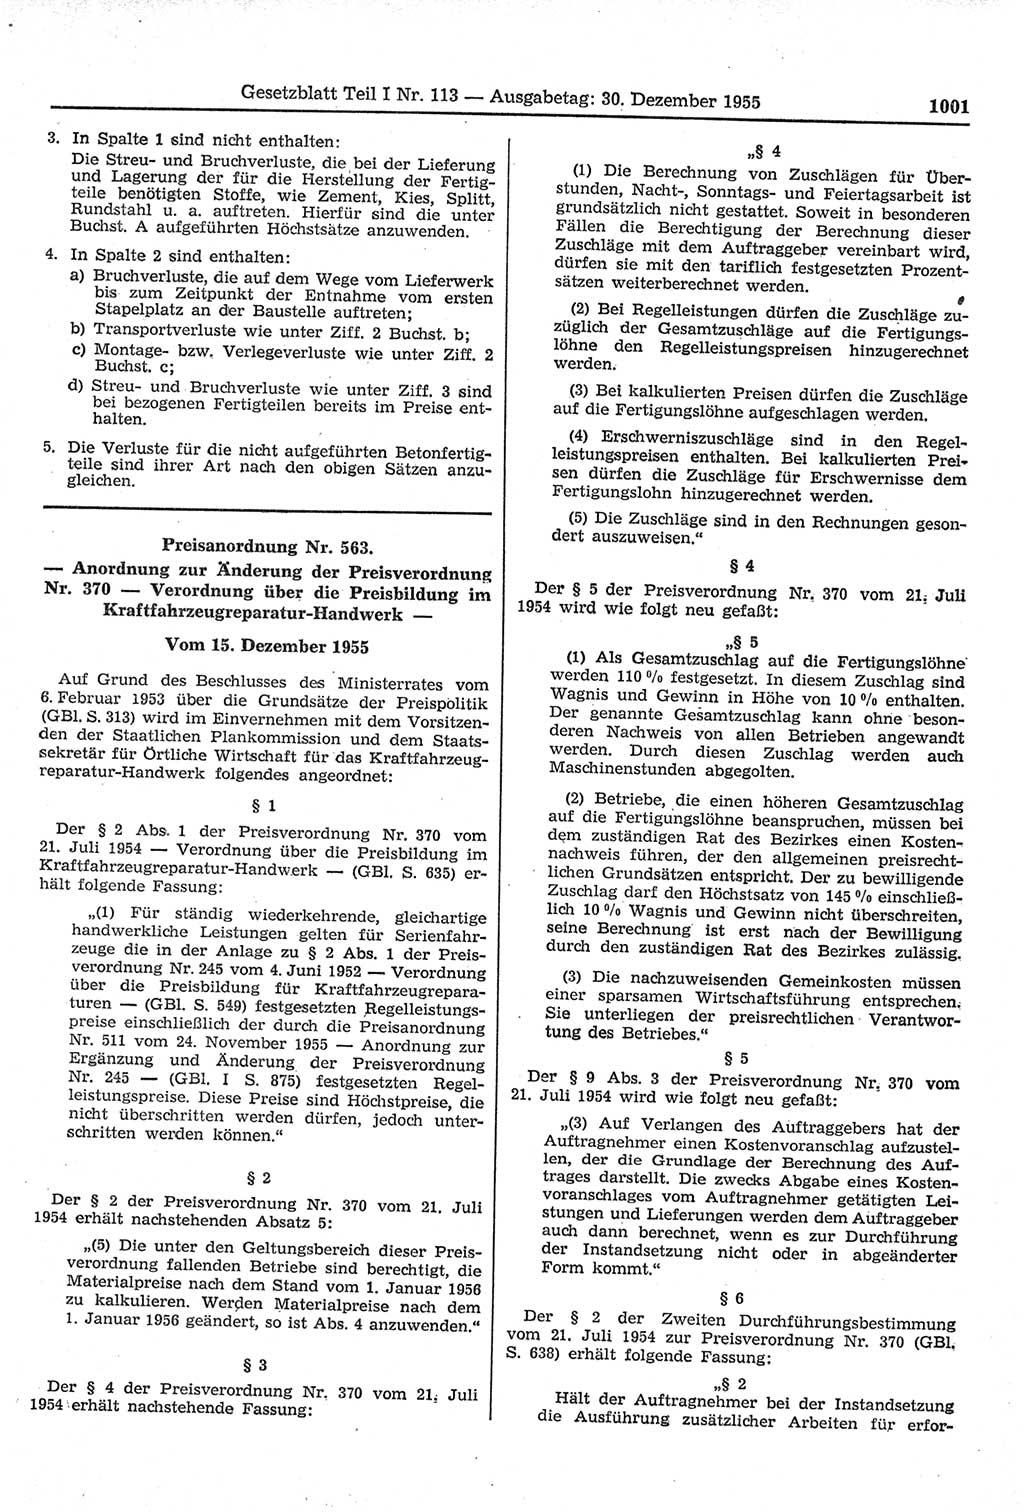 Gesetzblatt (GBl.) der Deutschen Demokratischen Republik (DDR) Teil Ⅰ 1955, Seite 1001 (GBl. DDR Ⅰ 1955, S. 1001)